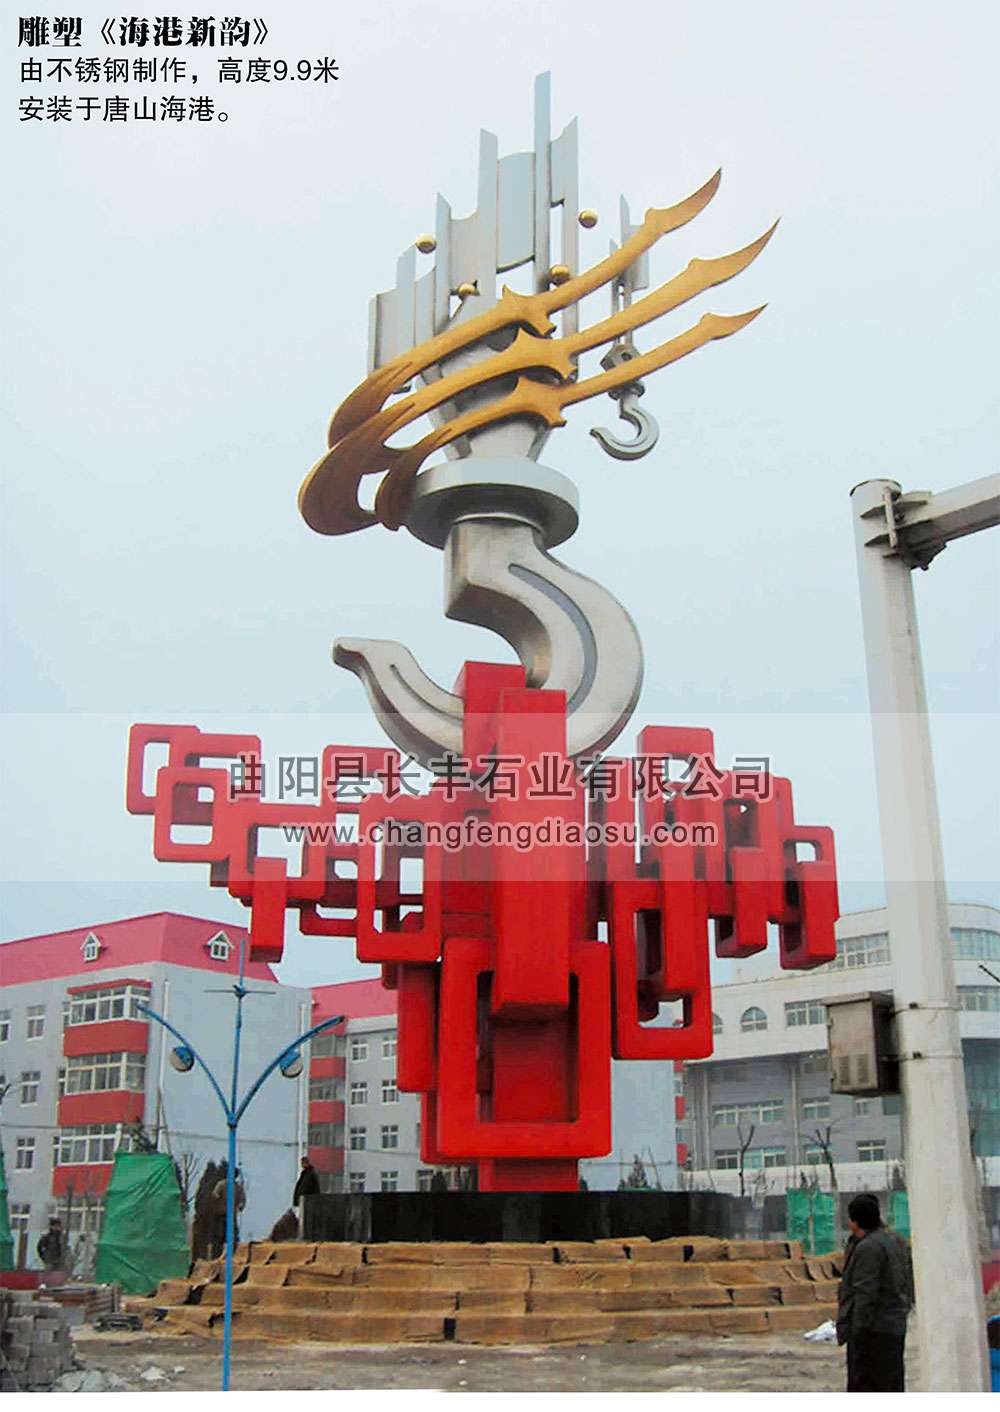 27-28-不锈钢雕塑-海港新韵-唐山海港-高度9点9米-1001.jpg